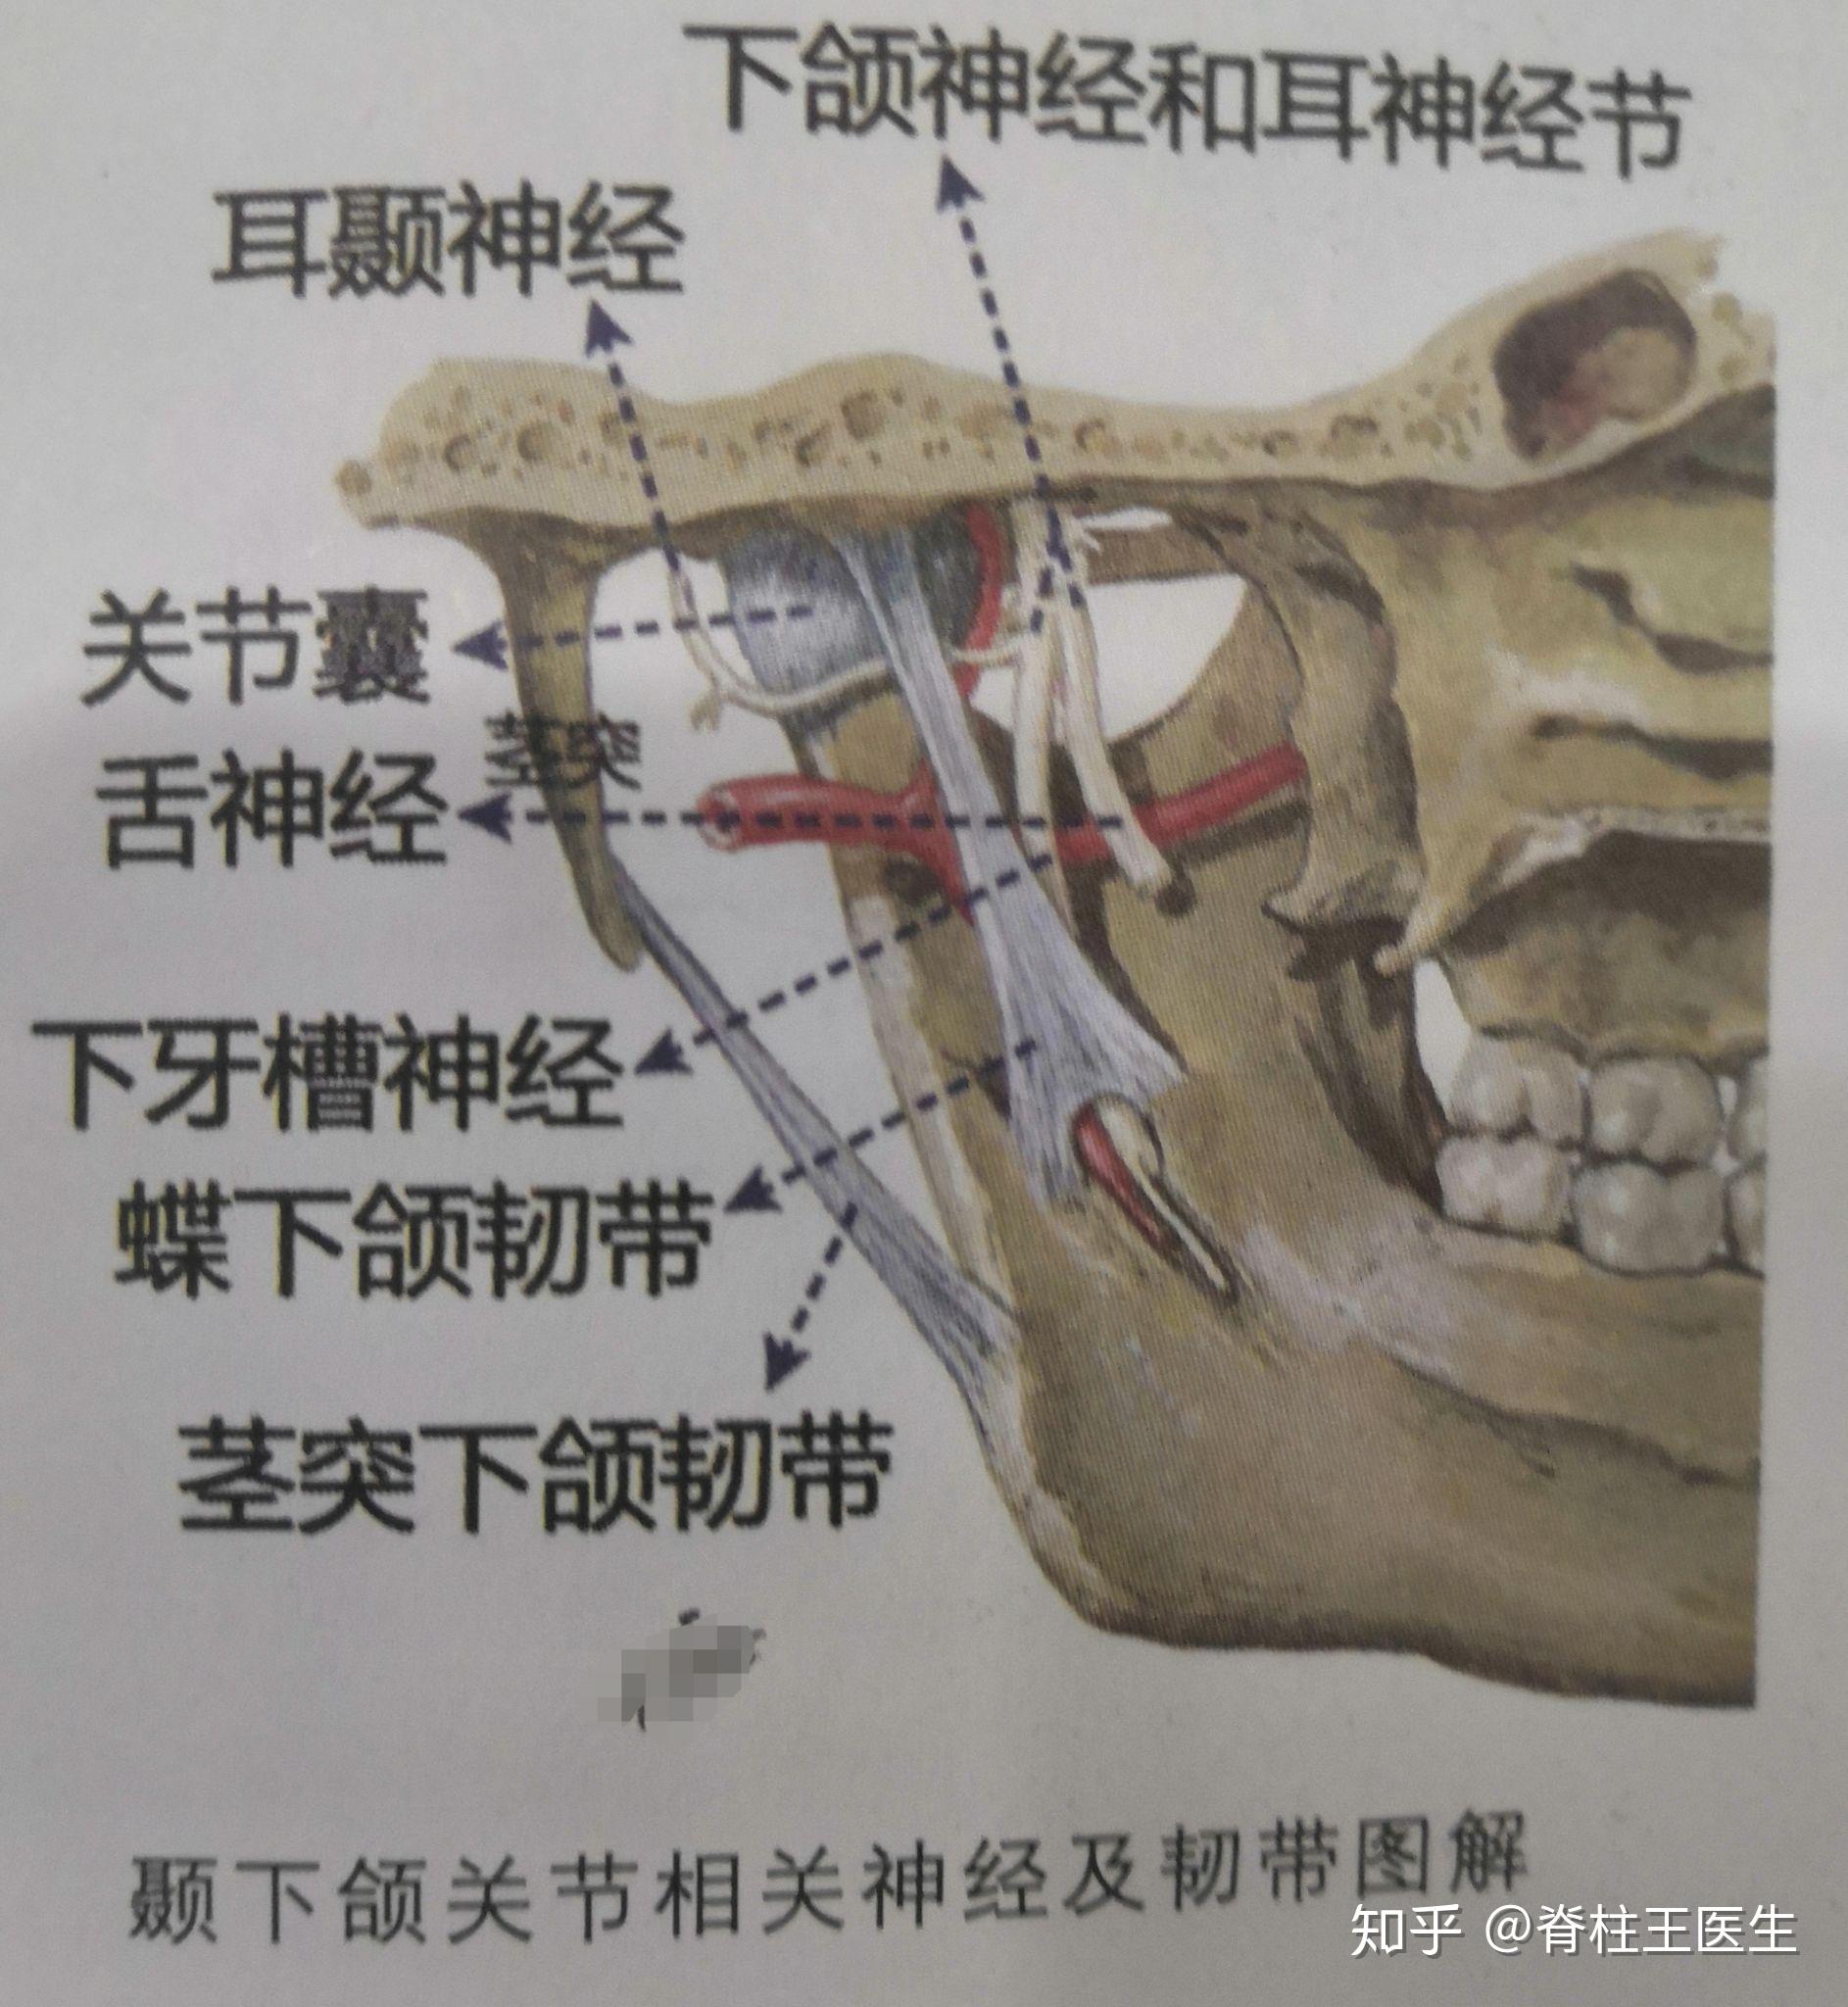 下颌骨神经线图片